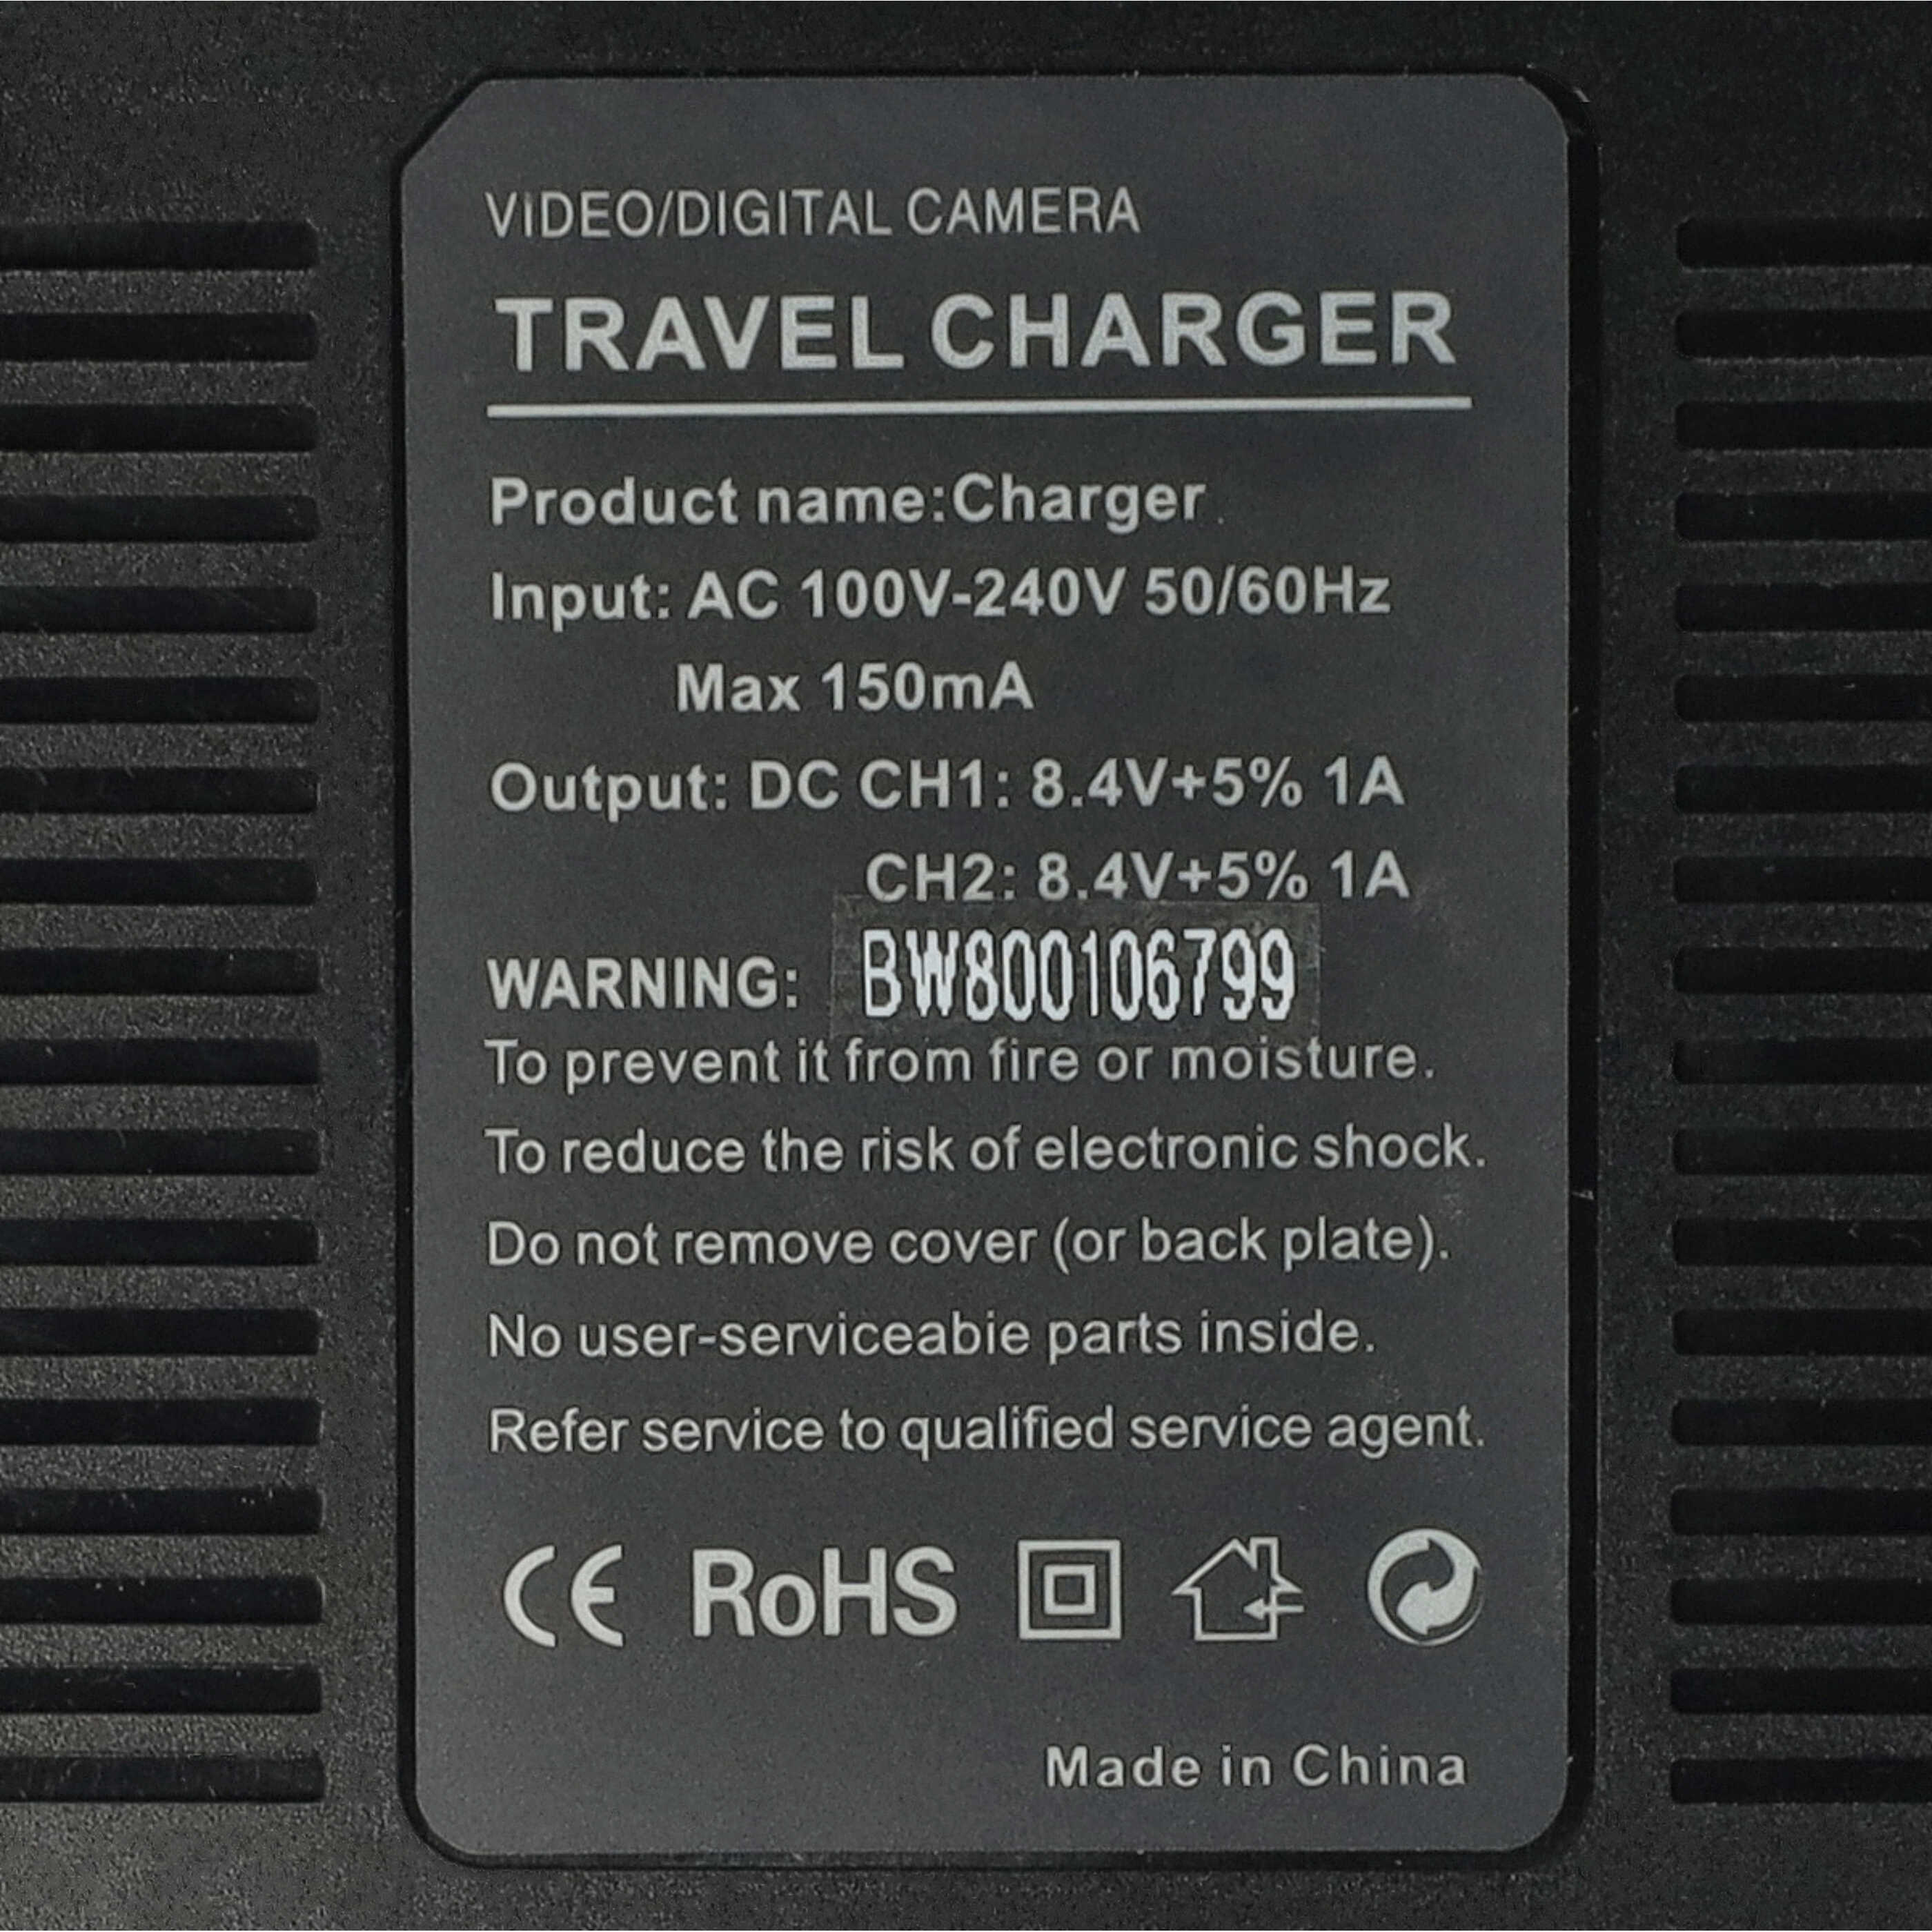 Akku Ladegerät passend für Sony NP-FW50 Kamera u.a. - 0.5 / 0.9 A, 4.2/8.4 V